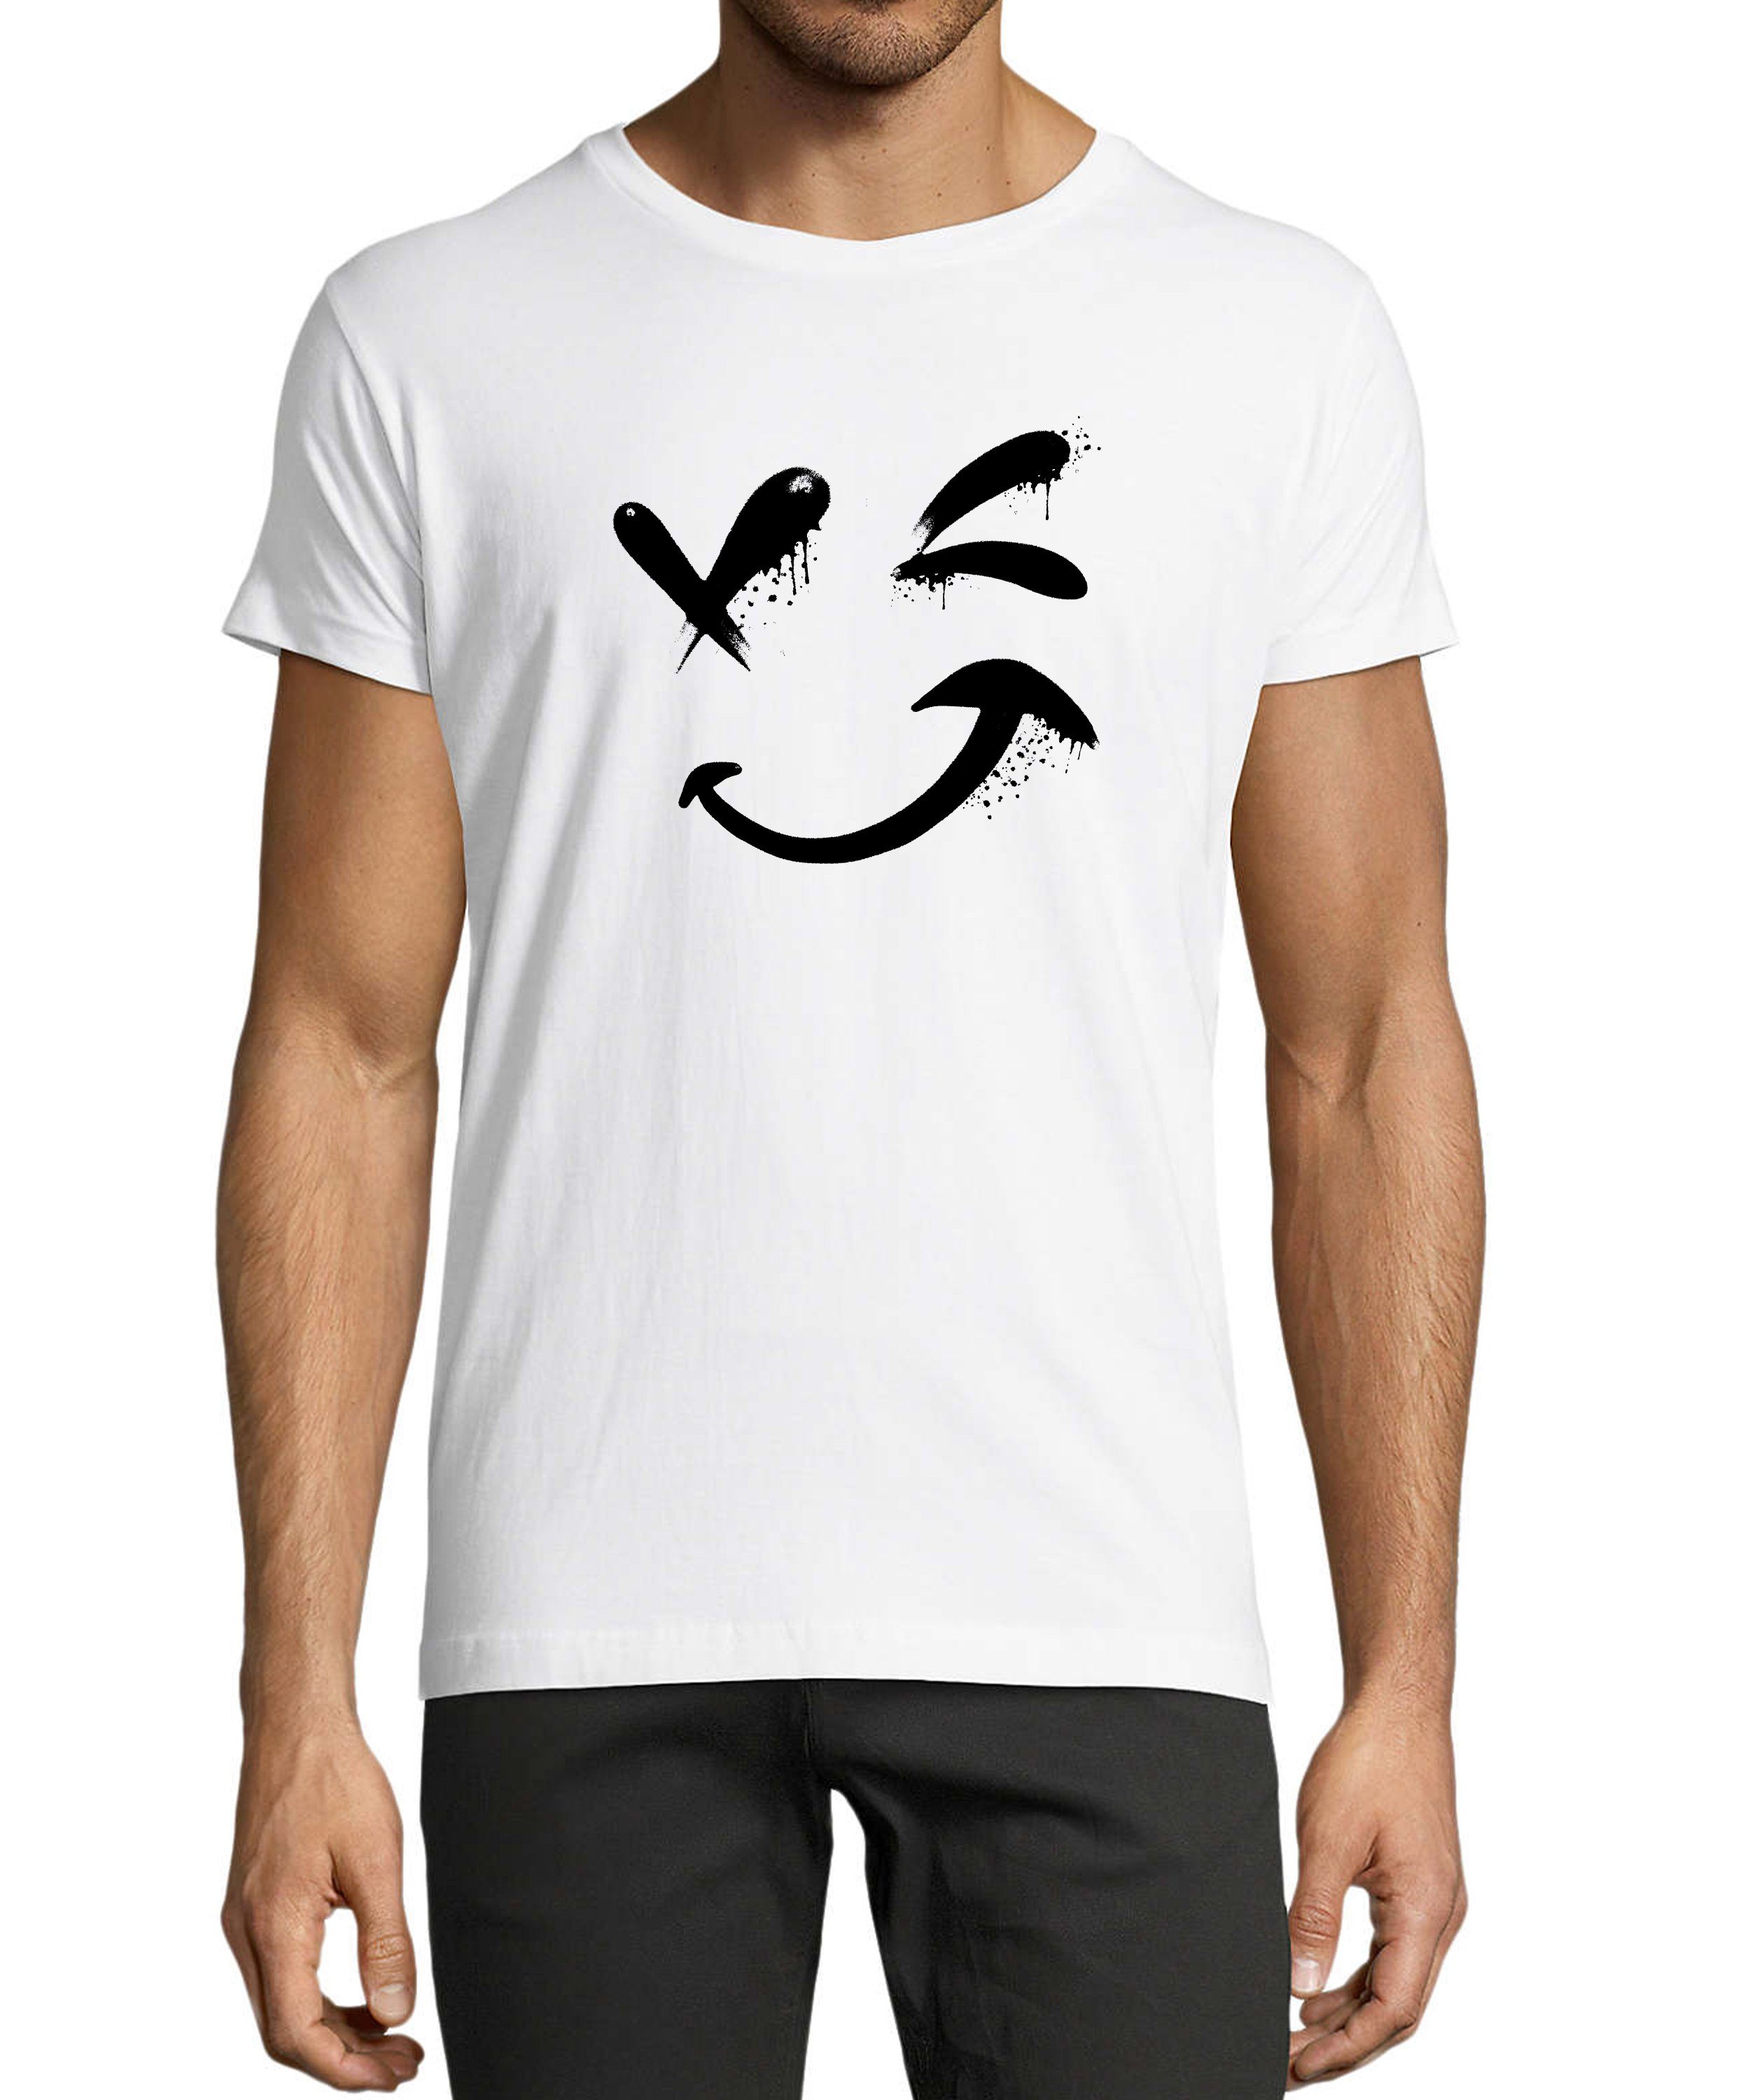 MyDesign24 T-Shirt Herren Smiley Print Shirt - Zwinkernder Smiley Baumwollshirt mit Aufdruck Regular Fit, i294 weiss